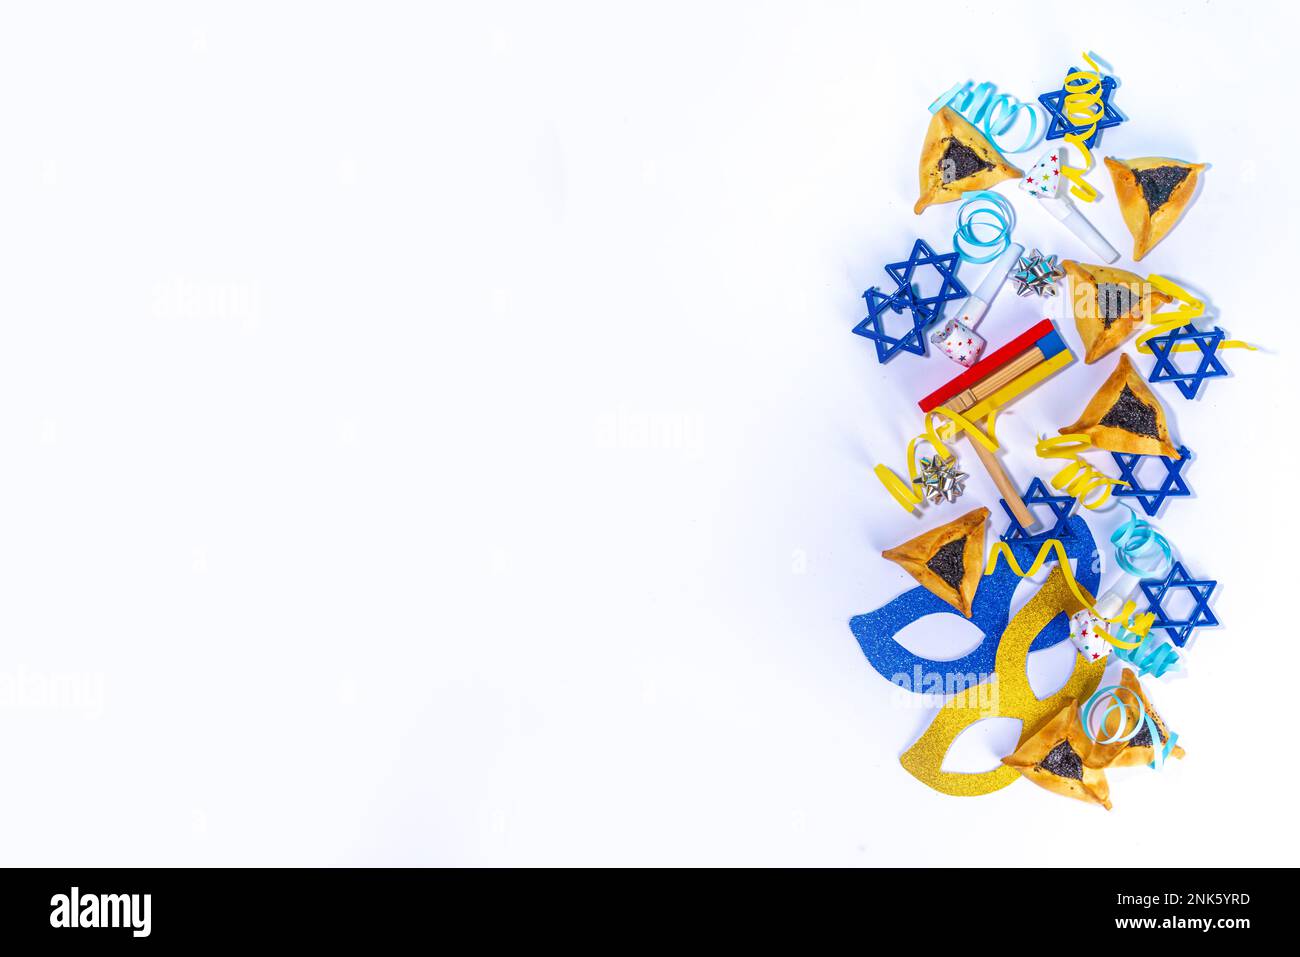 Jüdischer Feiertag Purim Grußkarte Hintergrund, jüdischer Frühlingsbeginn Feiertag Karneval Wohnung mit traditionellen Karnevalsmasken, Rassel, Geschenke und Hamant Stockfoto